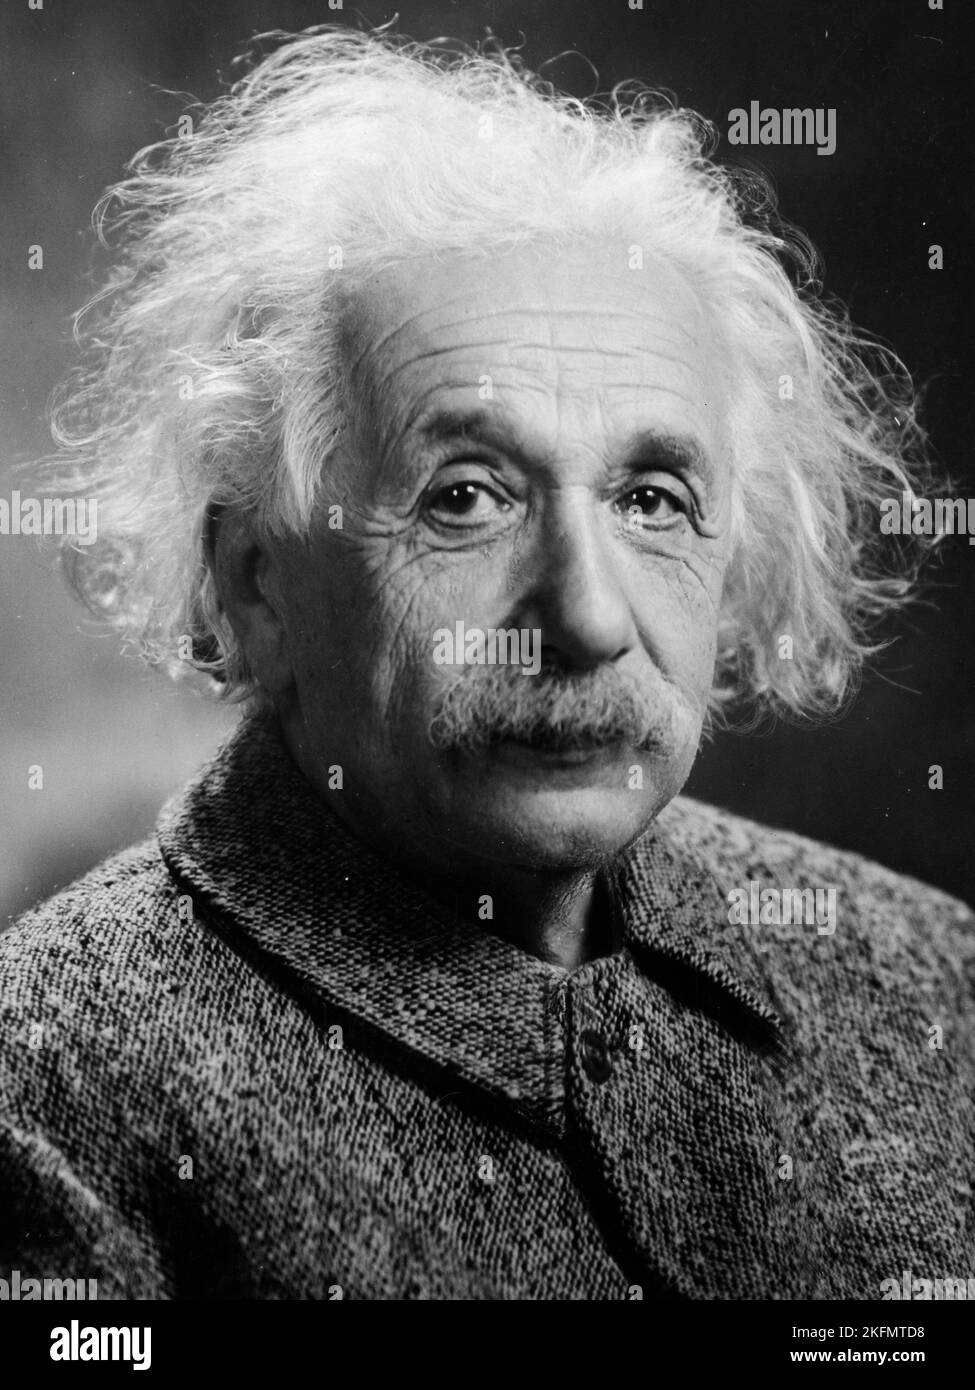 USA - 1947 - Ritratto di Albert Einstein preso nel 1947 negli Stati Uniti - Foto: Geopix/Oren Turner Foto Stock